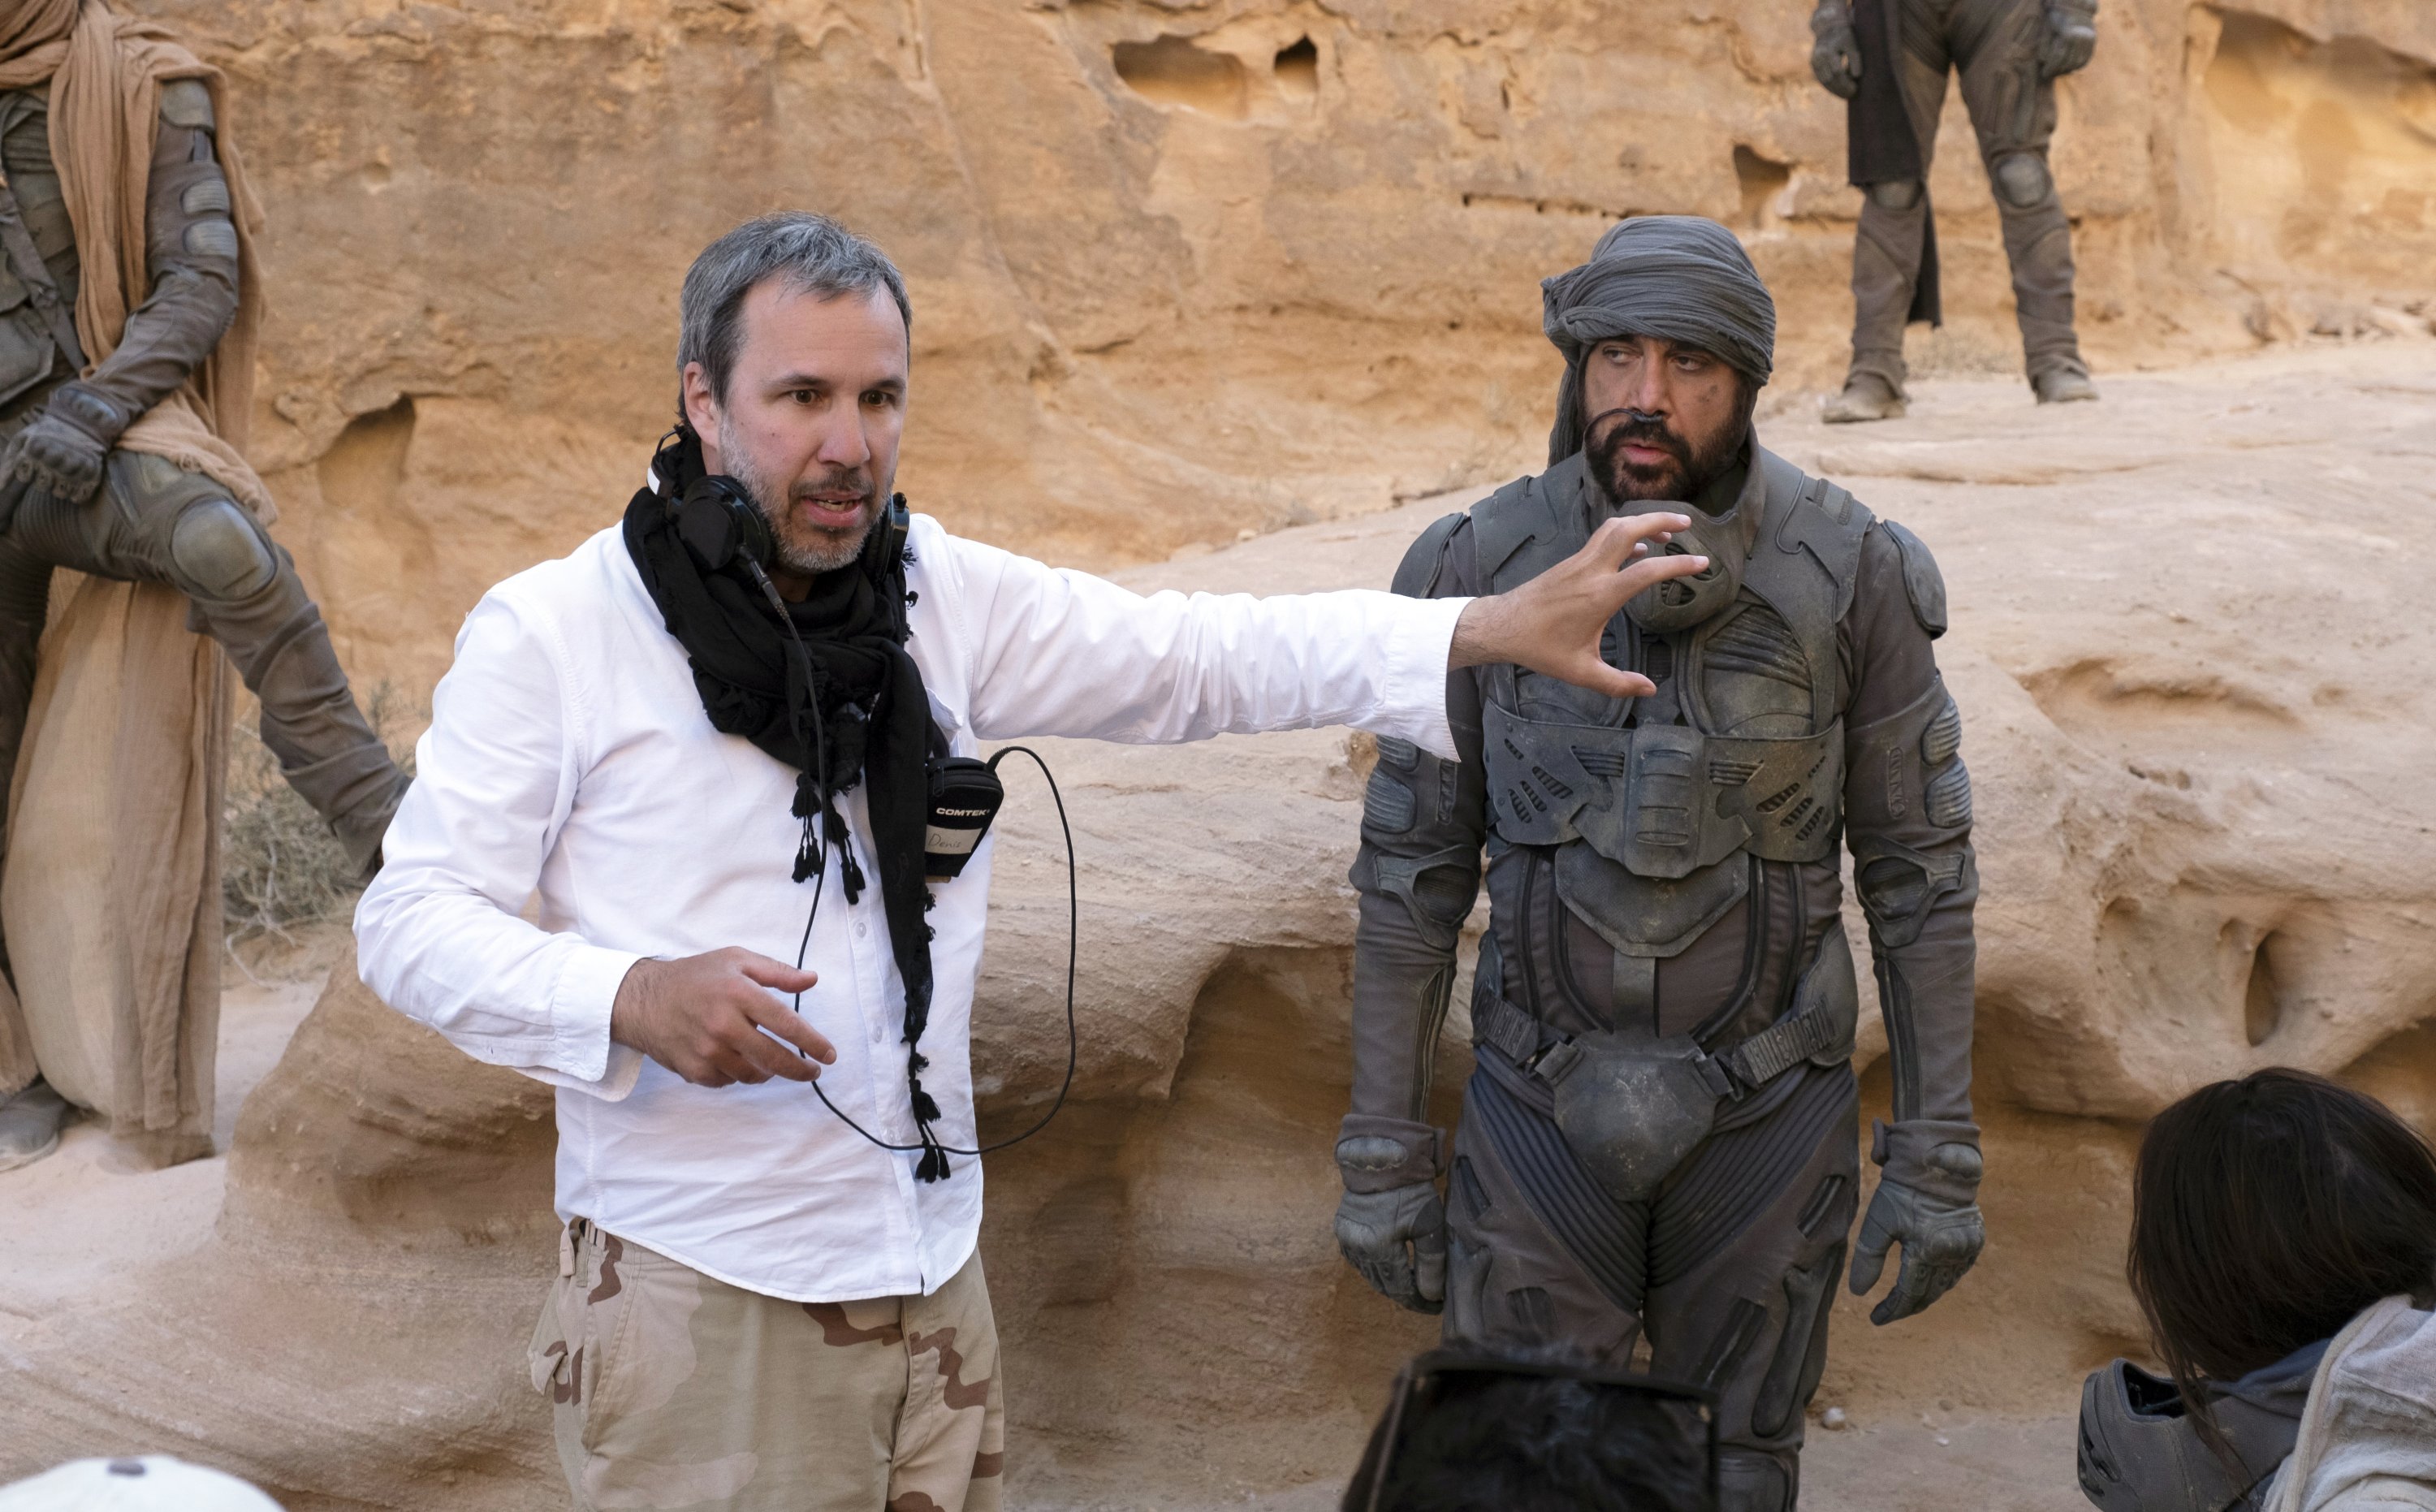 Gambar yang dirilis oleh Warner Bros. Entertainment ini menunjukkan pembuat film Denis Villeneuve (kiri) dan aktor Javier Bardem di lokasi syuting 